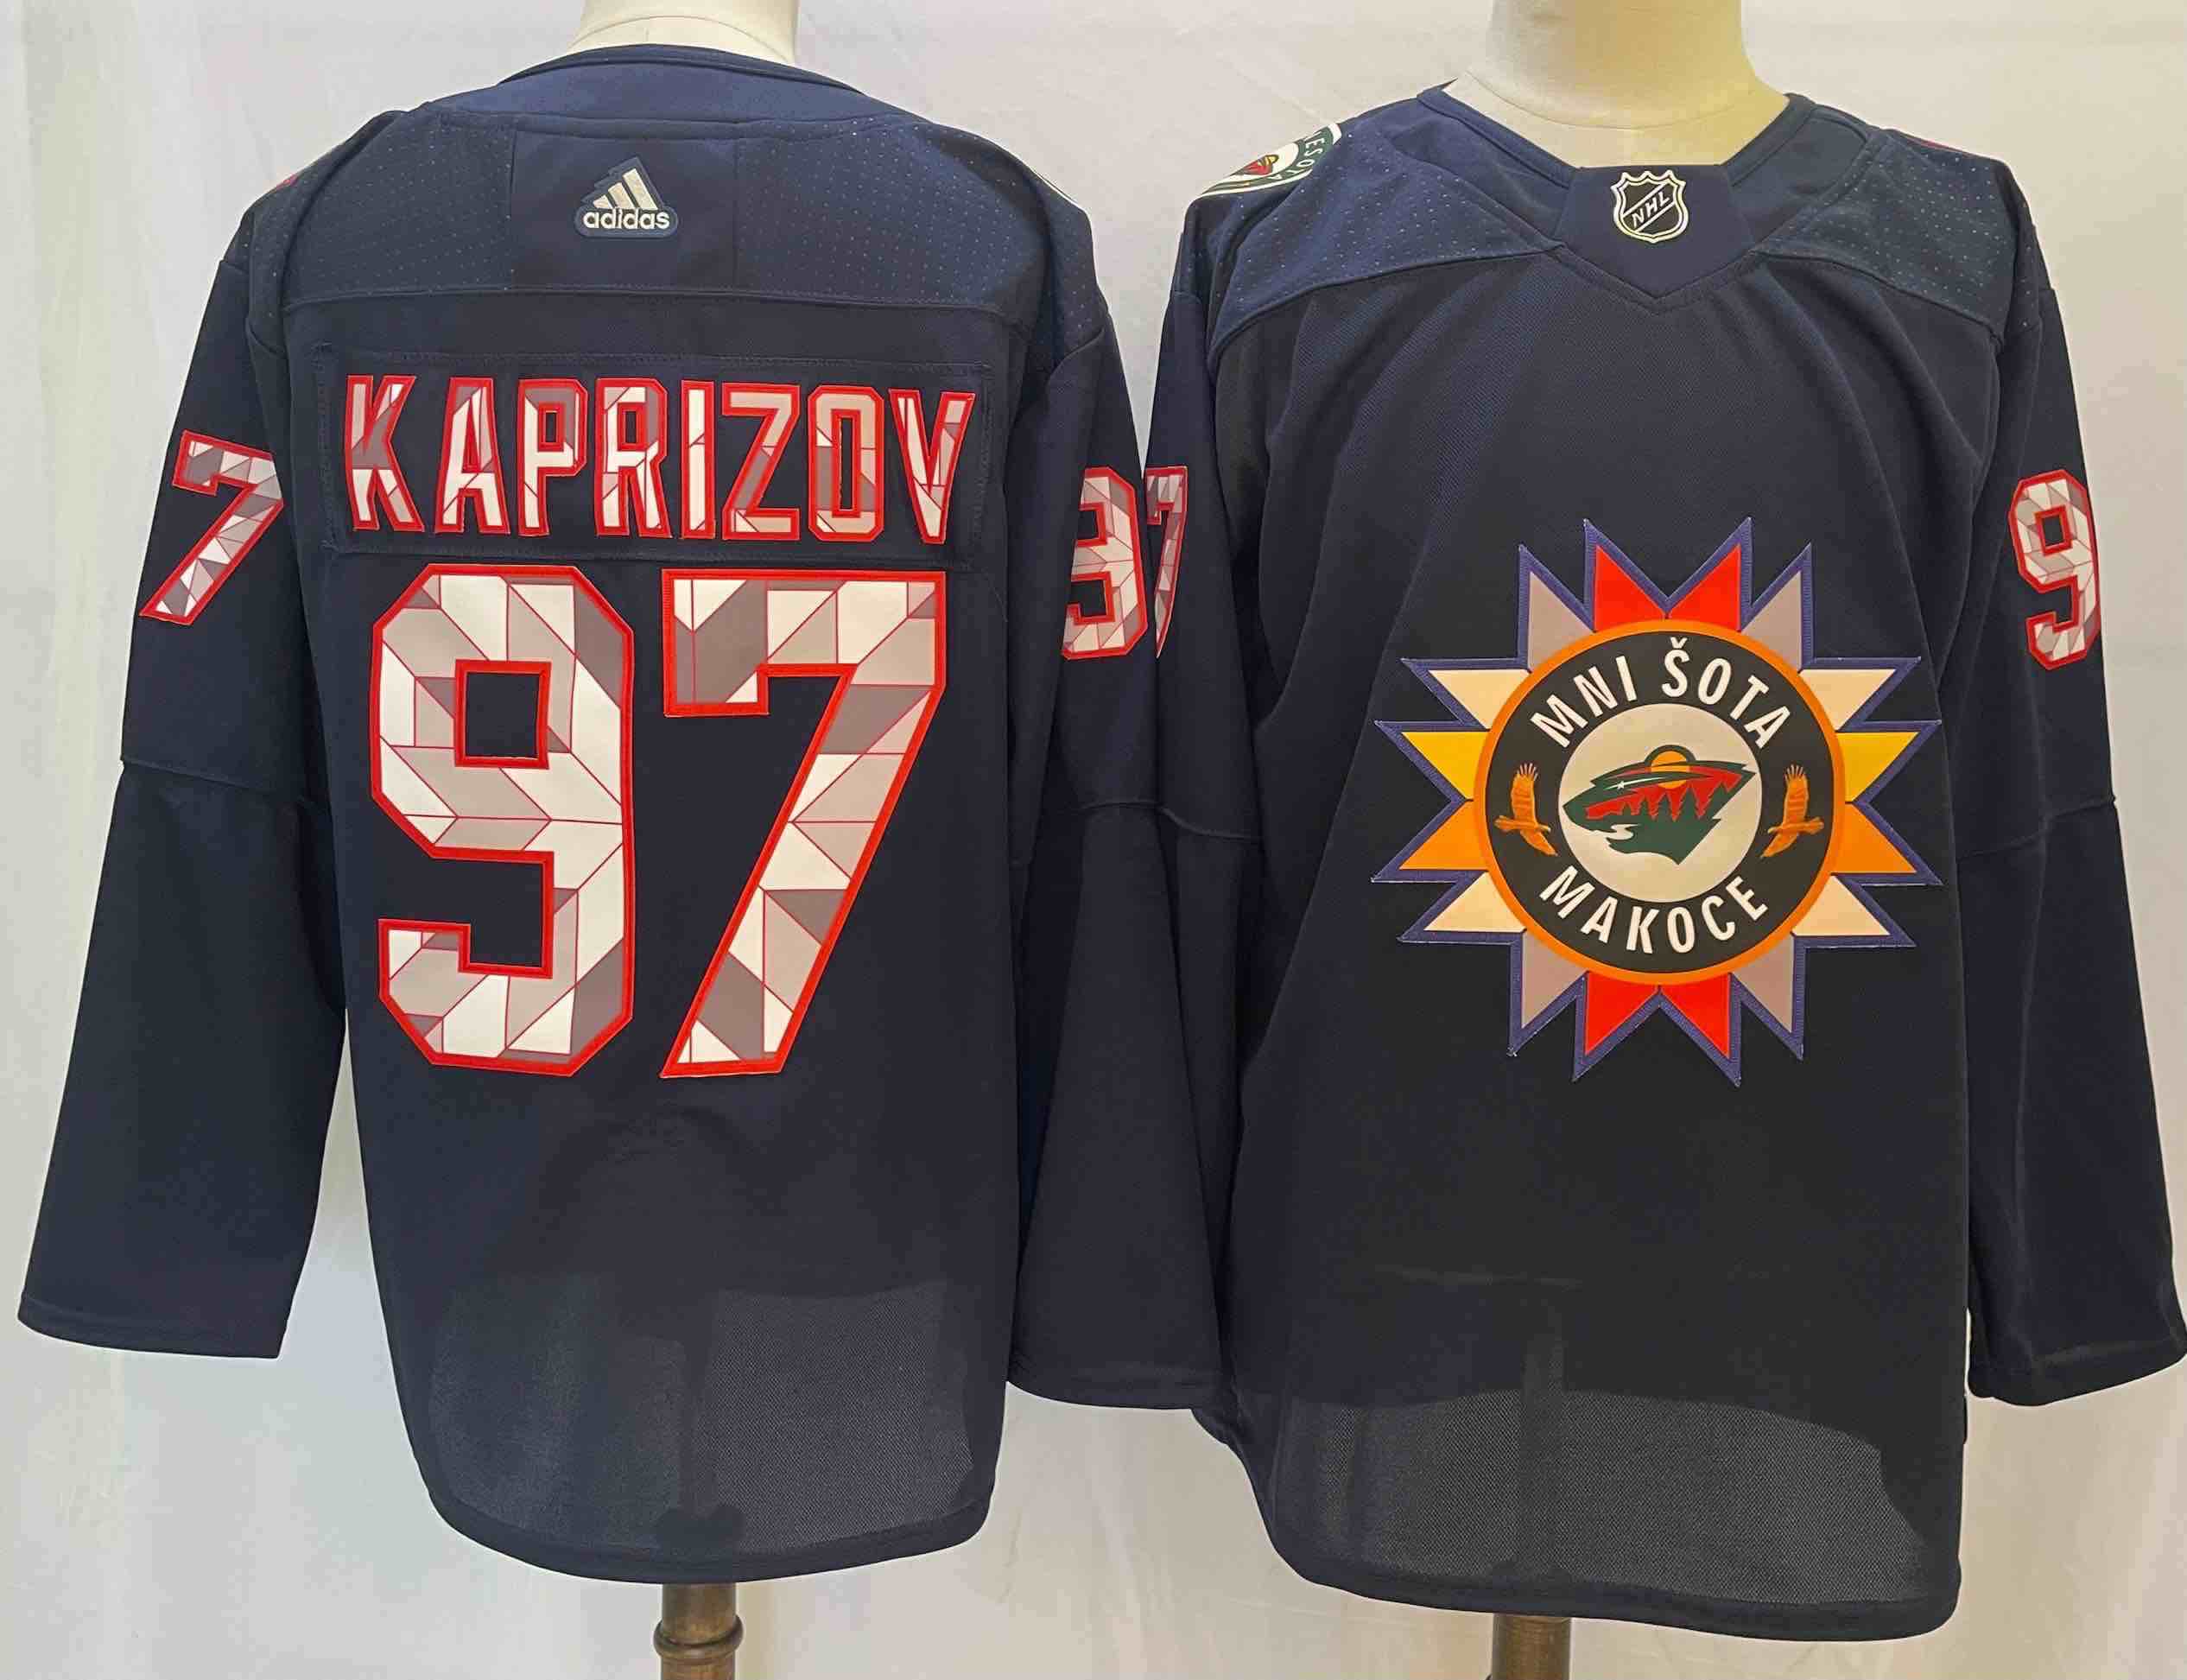 NHL Mnisota Makoce #97 Kaprizov Back Jersey